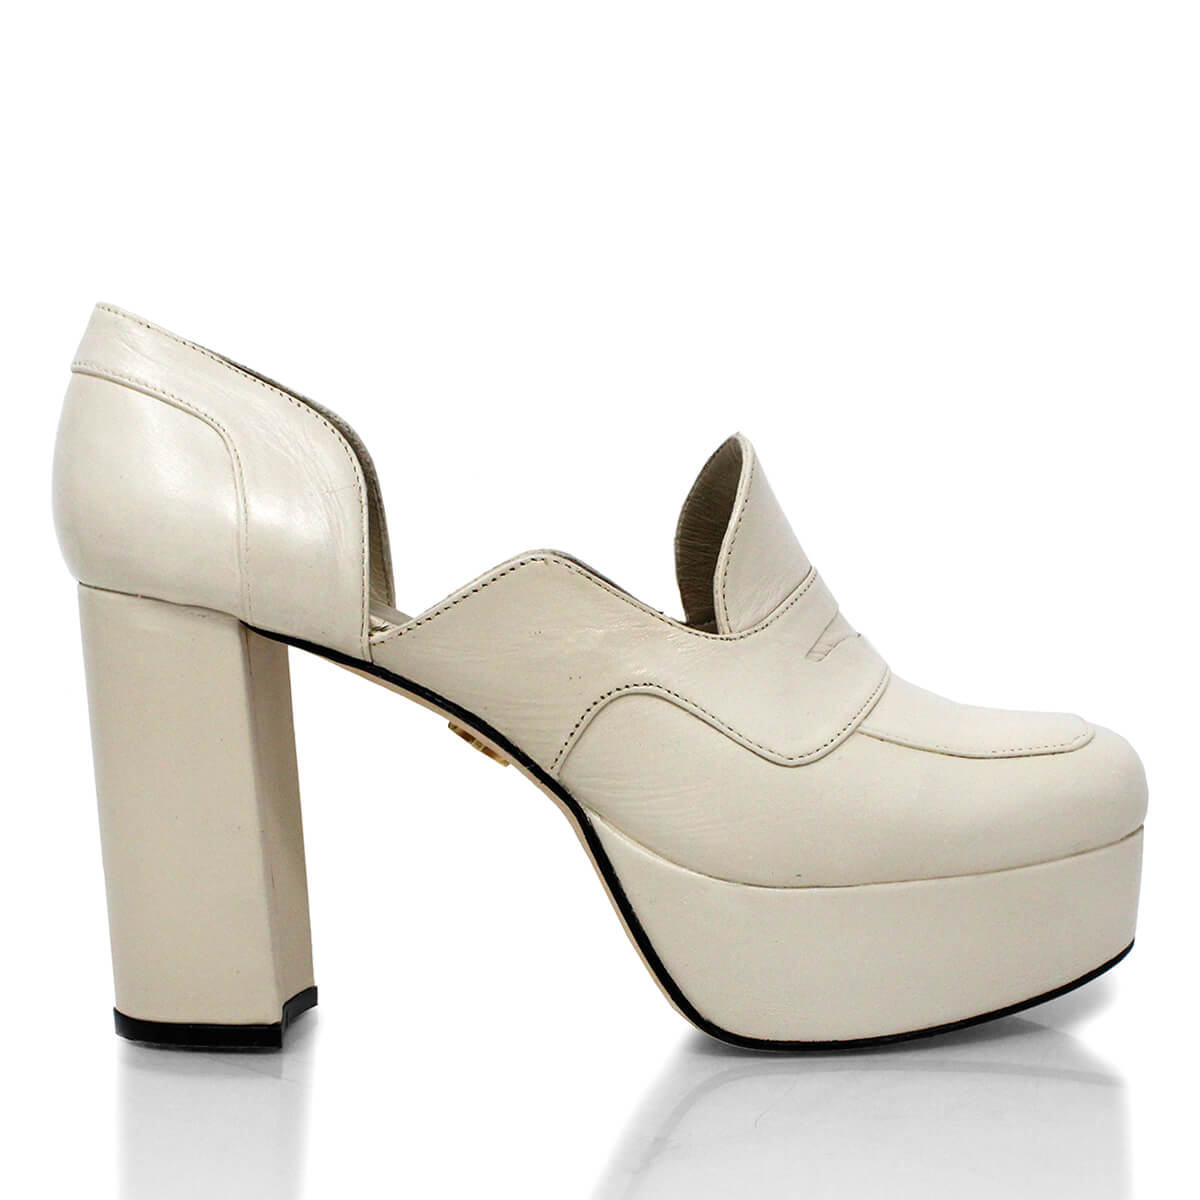 JOY 95 - White Regina Romero High Heel Sneaker Shoe for Women in Leather